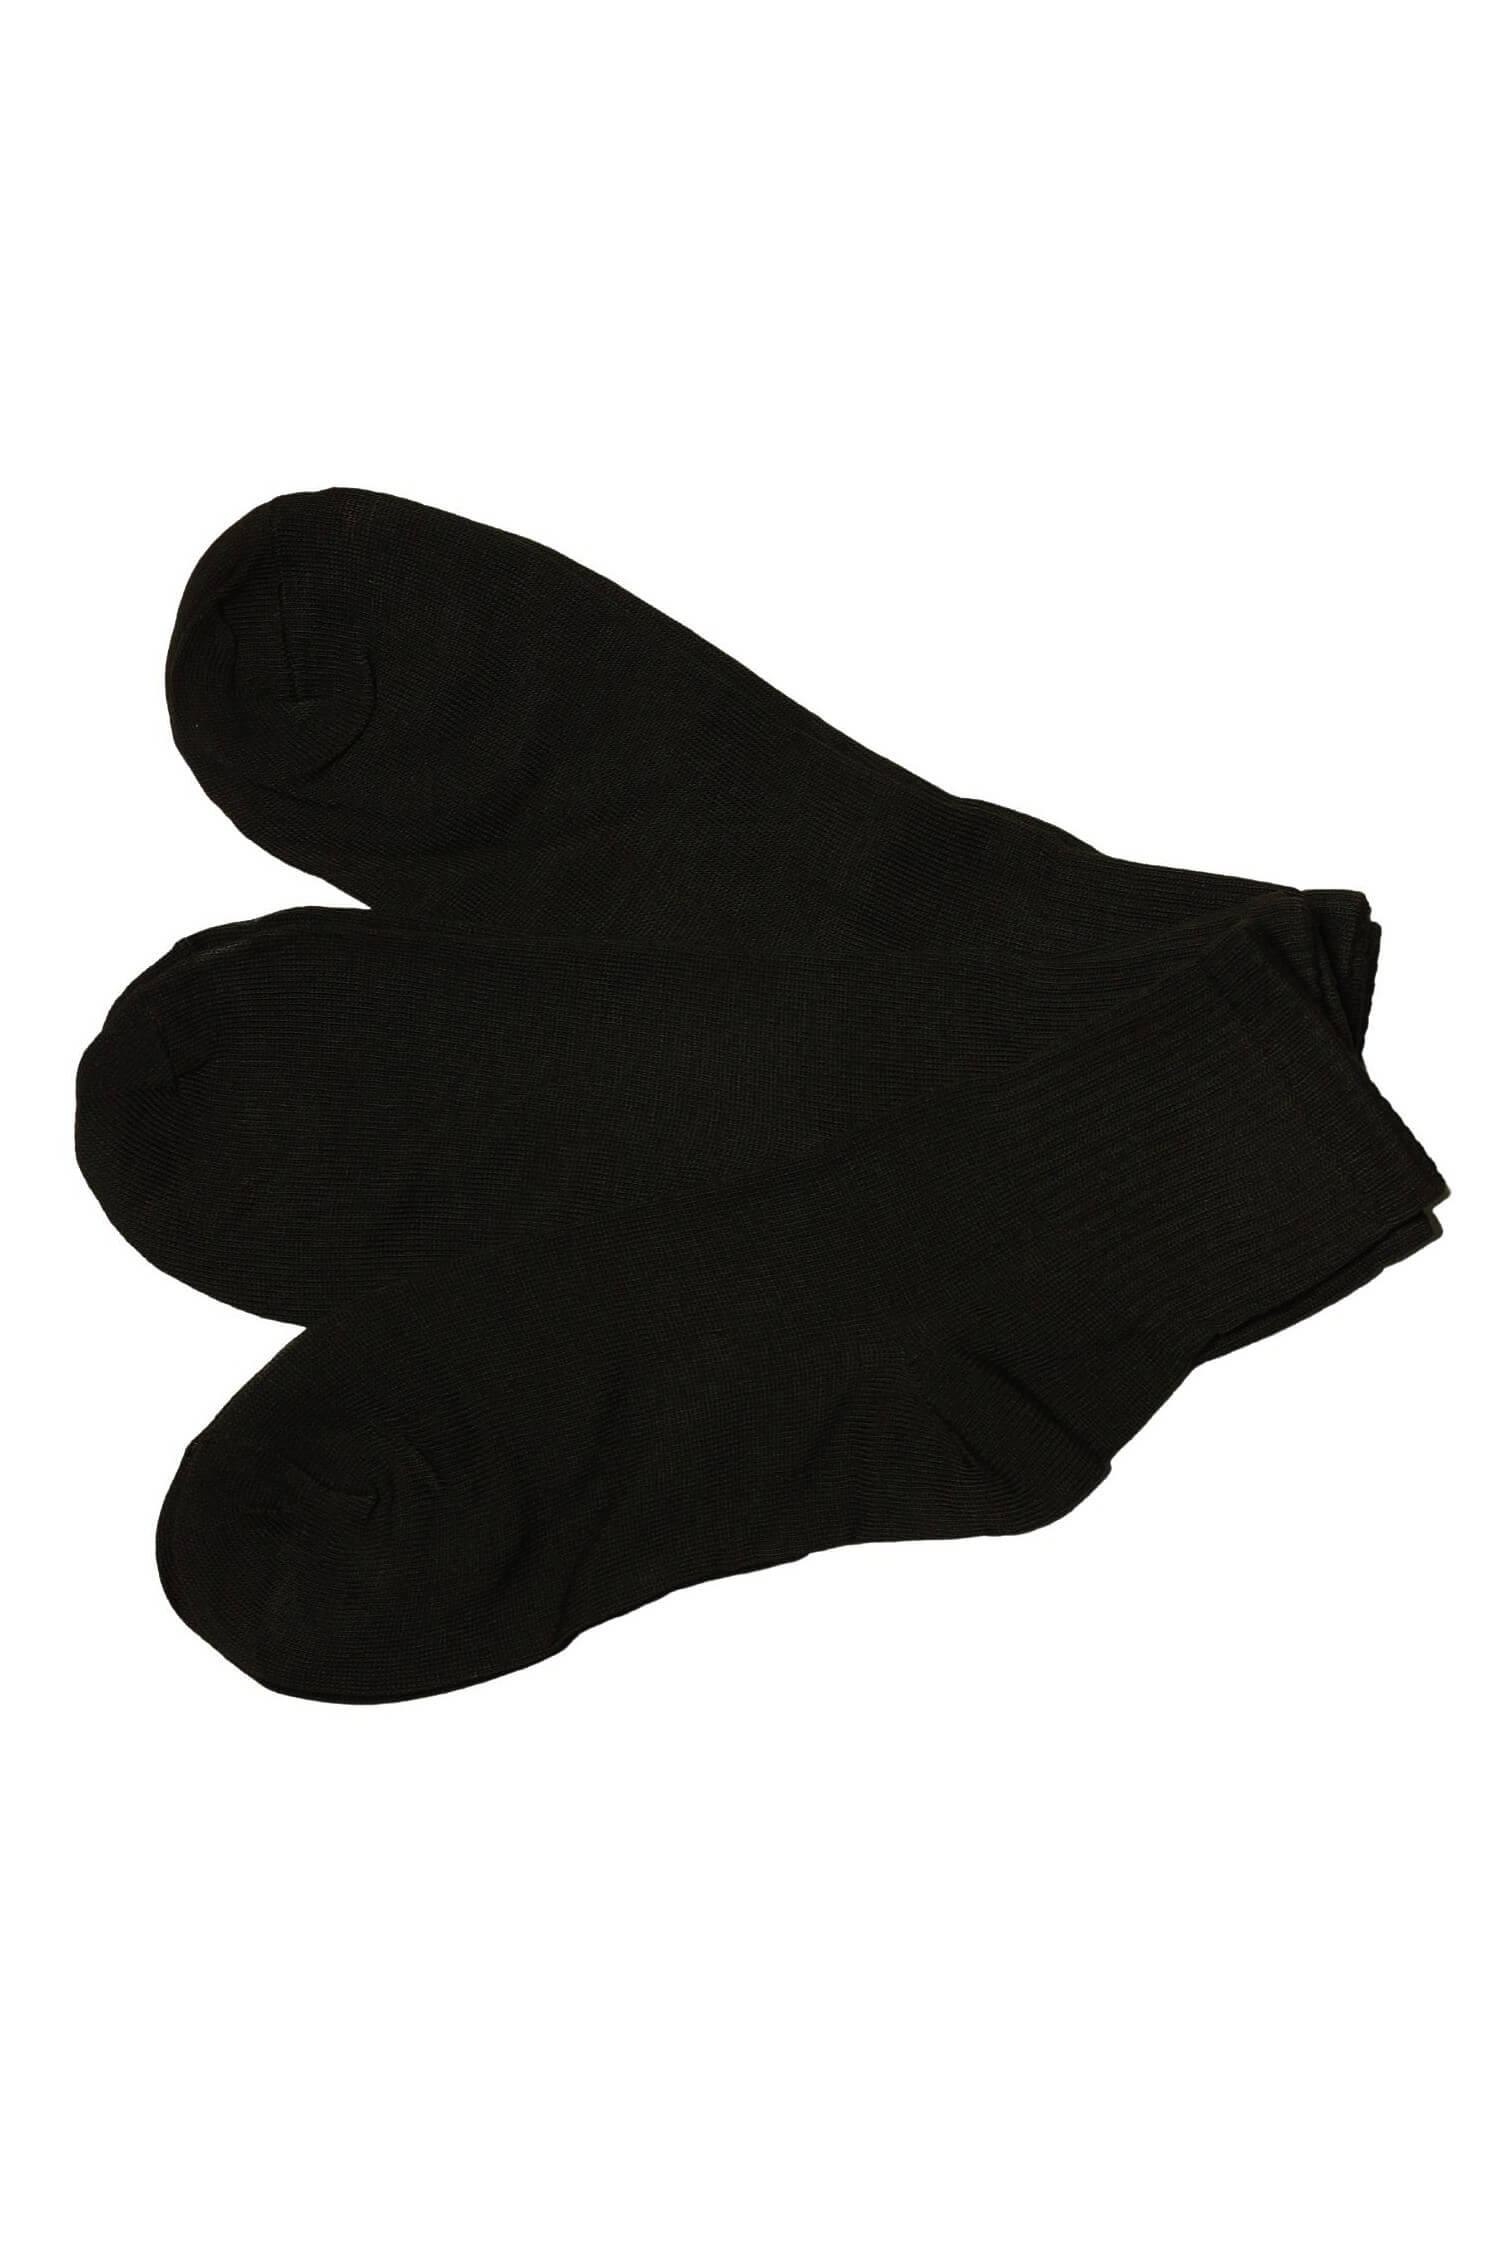 Dámské ponožky bavlněné ZW-401C - 3 páry 38-42 černá